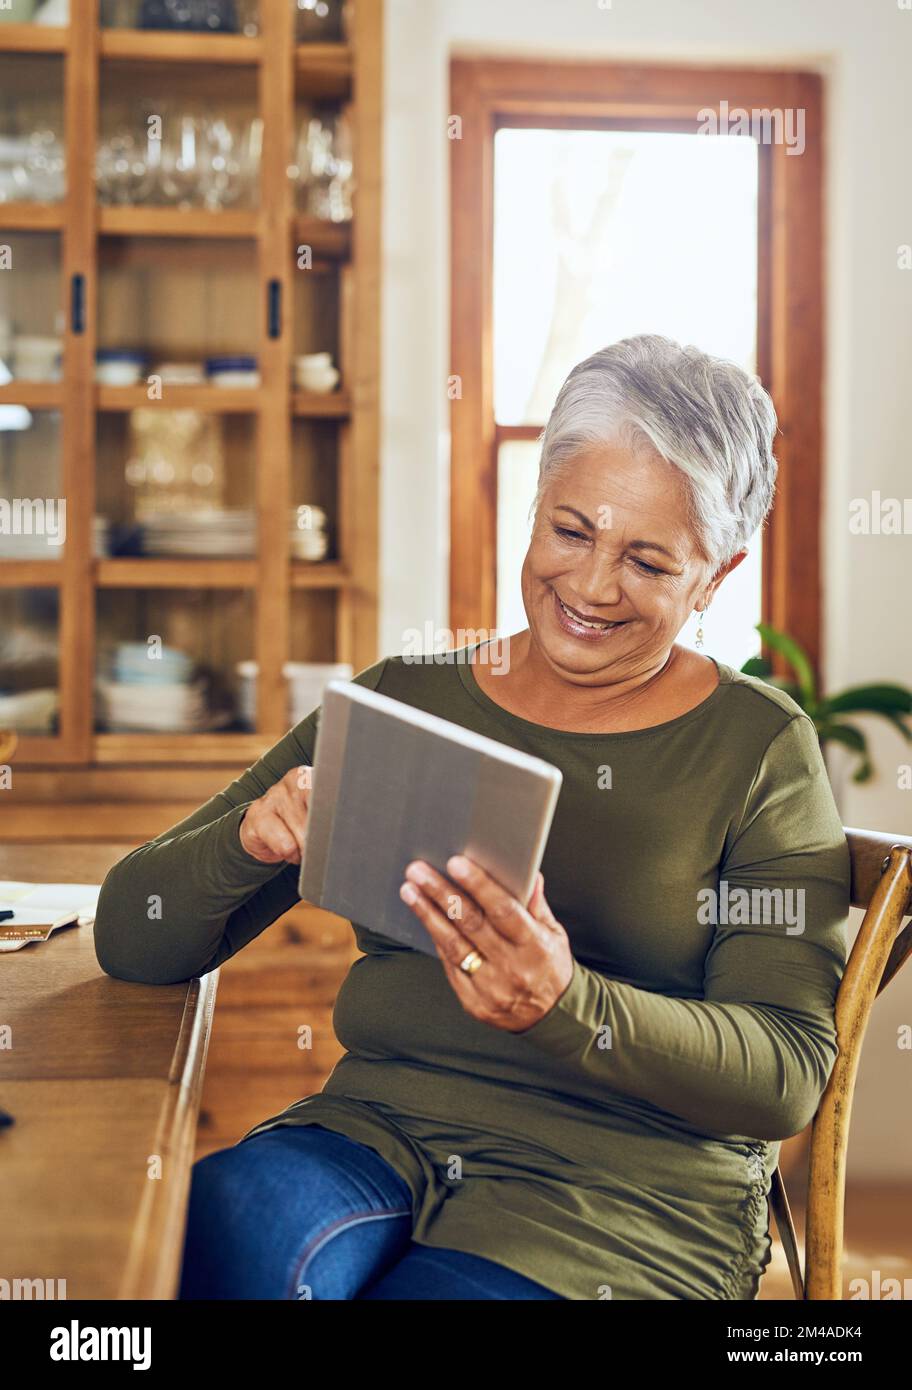 Il n'est pas étranger au monde numérique. une femme mûre utilisant une tablette numérique à la maison. Banque D'Images